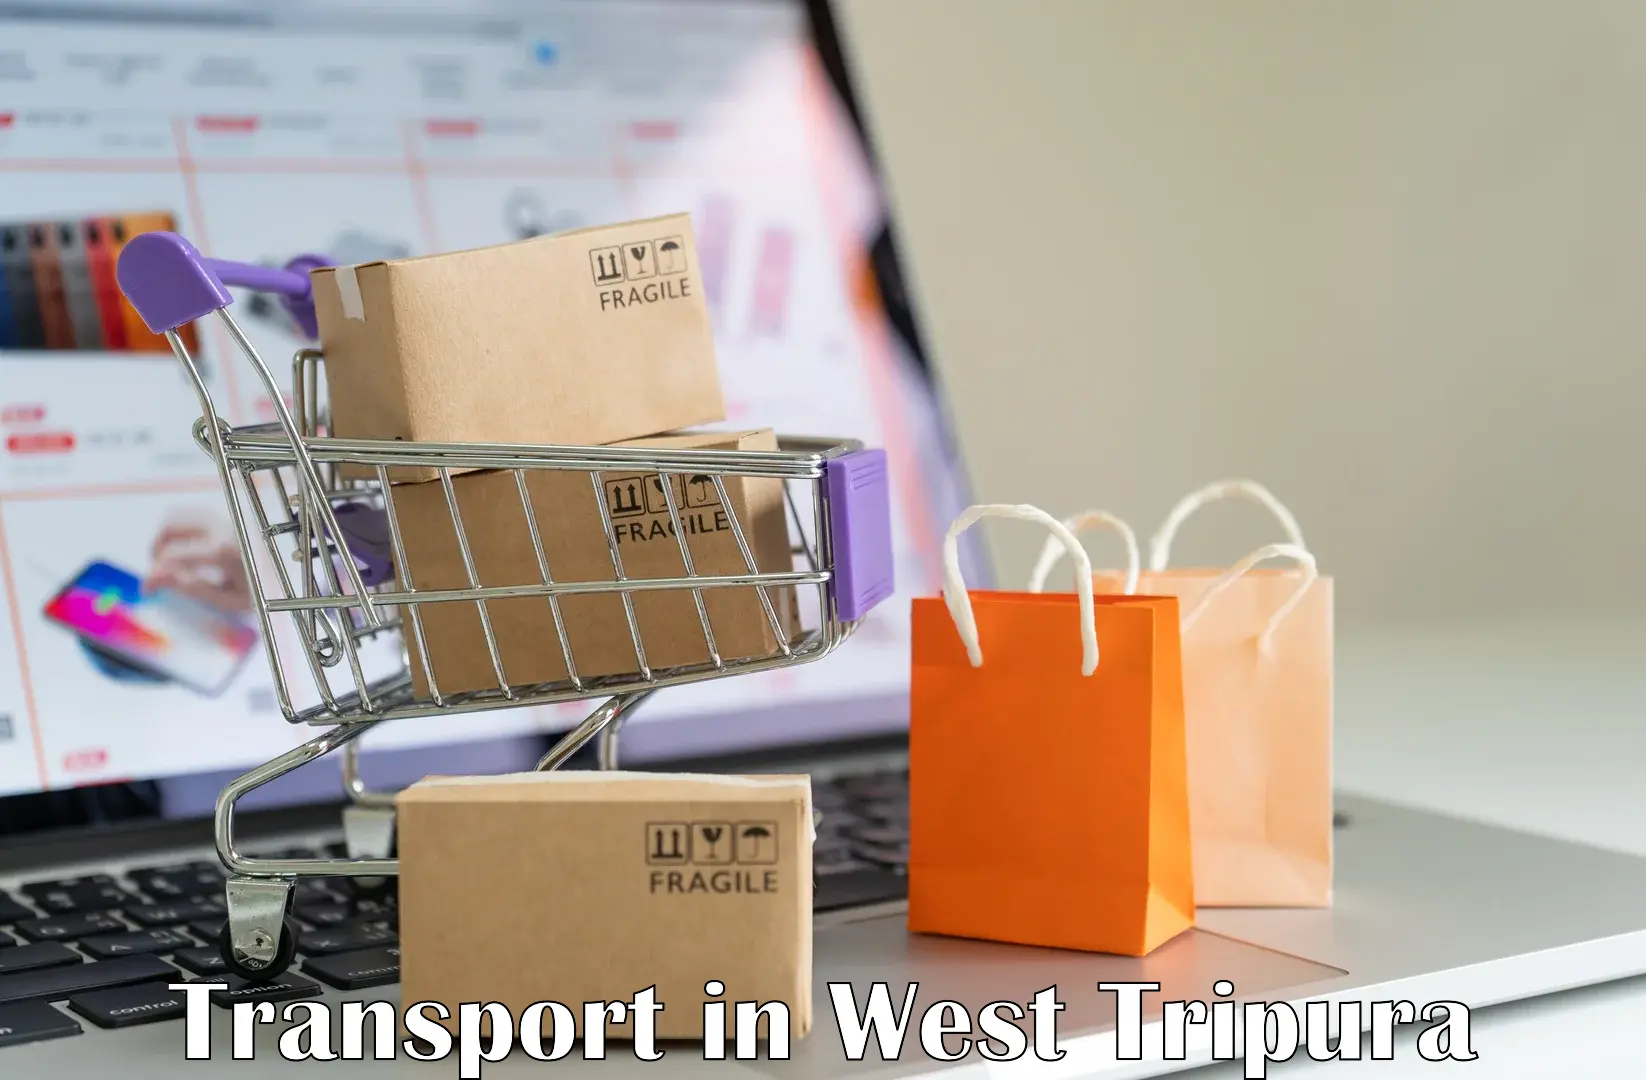 Online transport in West Tripura